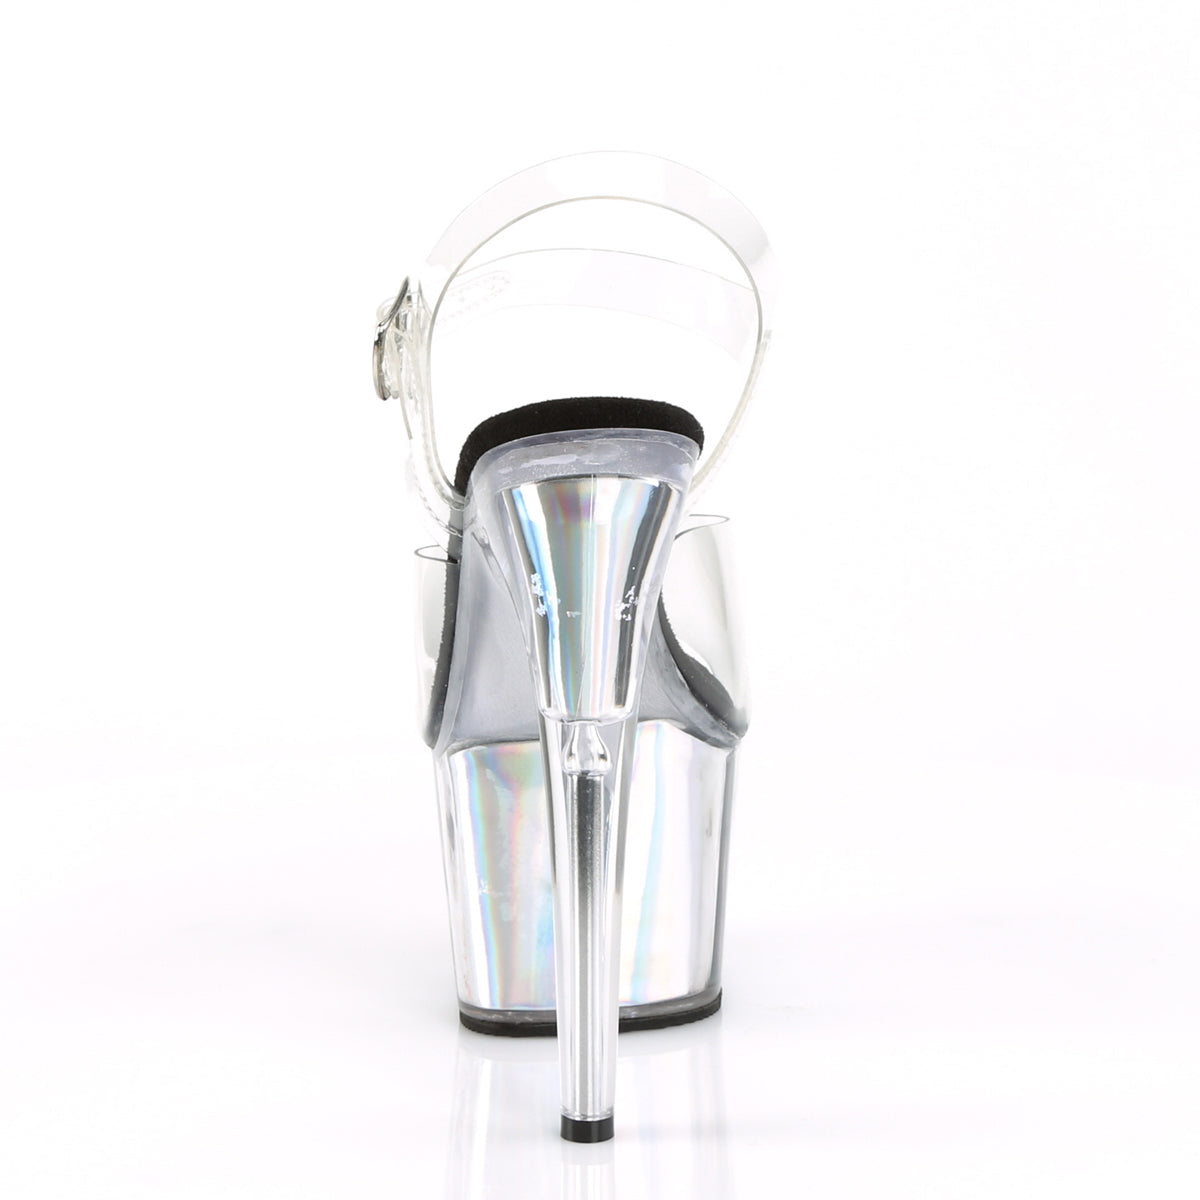 ADORE-708HGI Clear/Silver Hologram Inserts Platform Sandal Pleaser